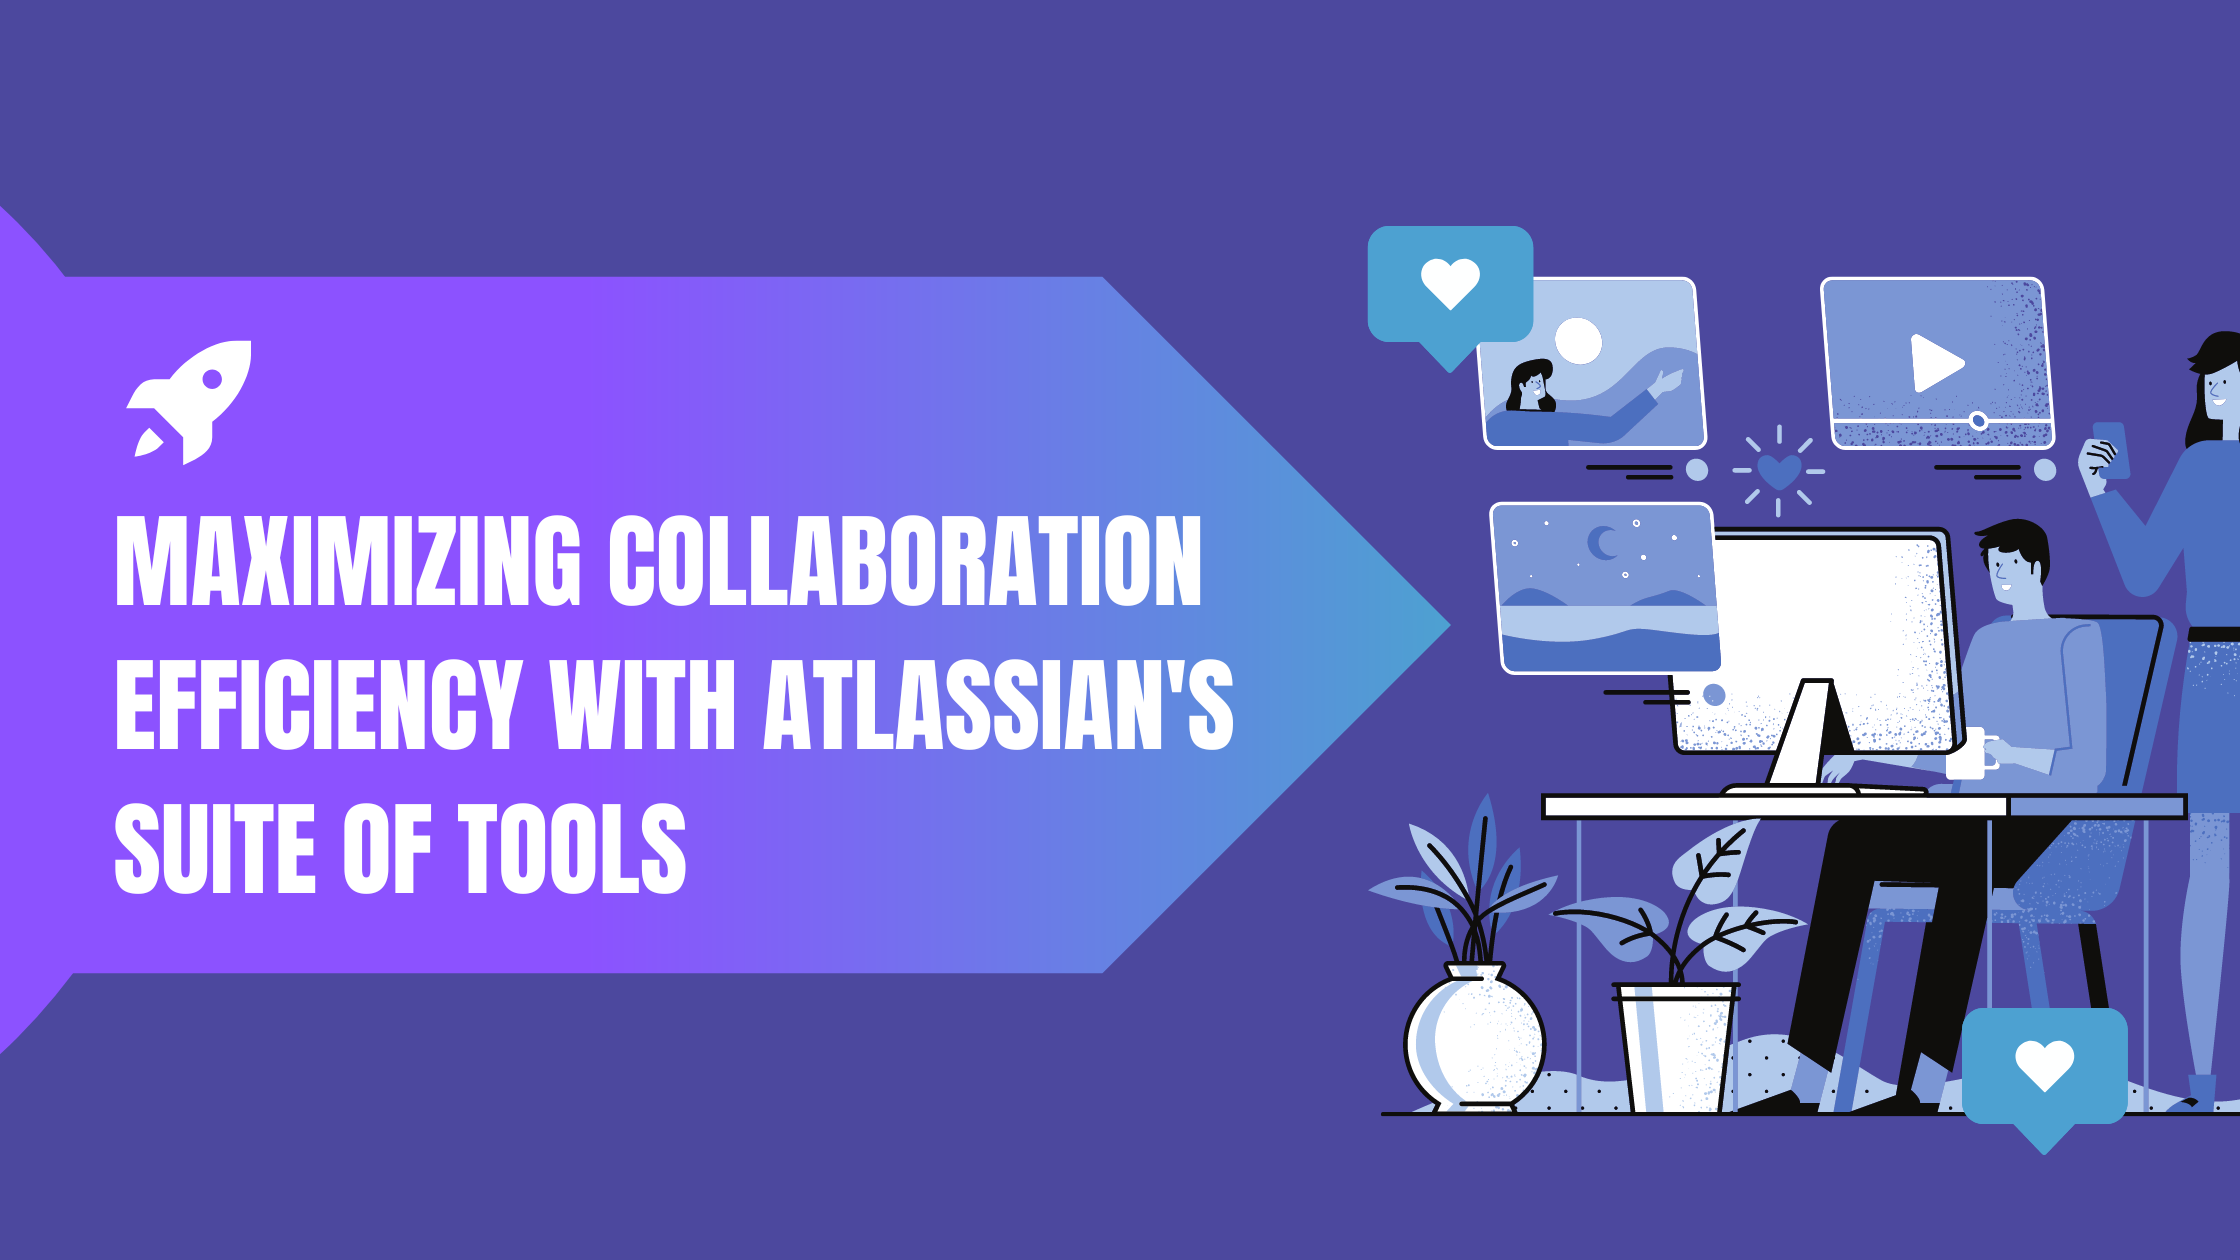 Atlassian's Suite of Tools